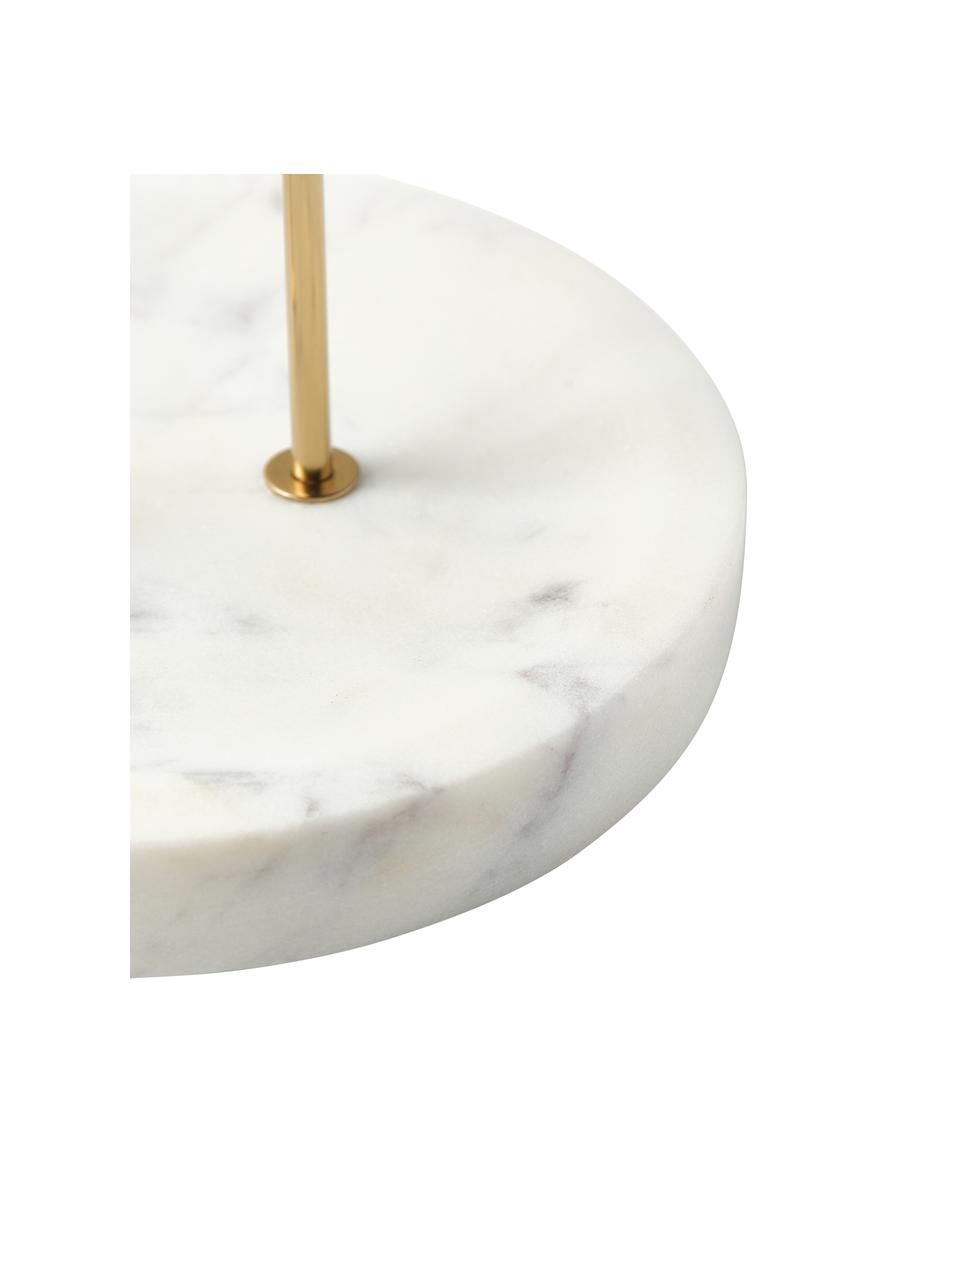 Schmuckhalter Selina mit Marmor-Sockel, Gestell: Metall, Sockel: Marmor, Weiß, marmoriert, Gold, B 20 x H 32 cm